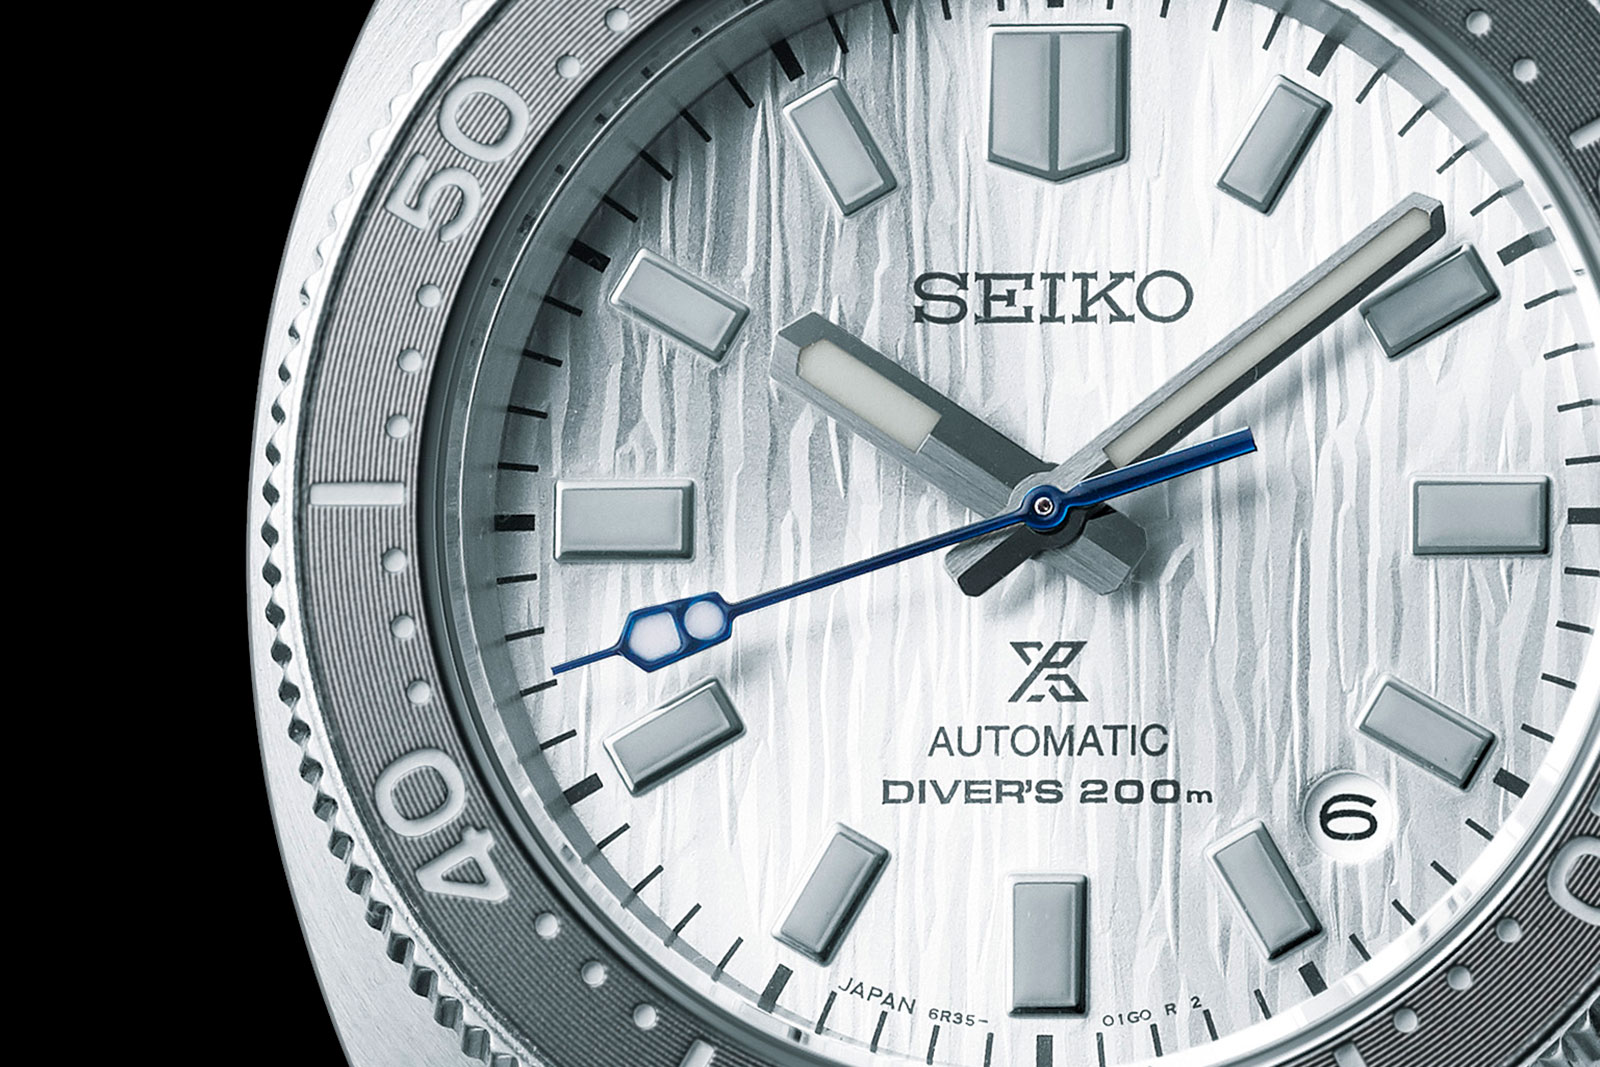 Seiko Introduces the Prospex SPB333, “White Birch” for Less | SJX Watches